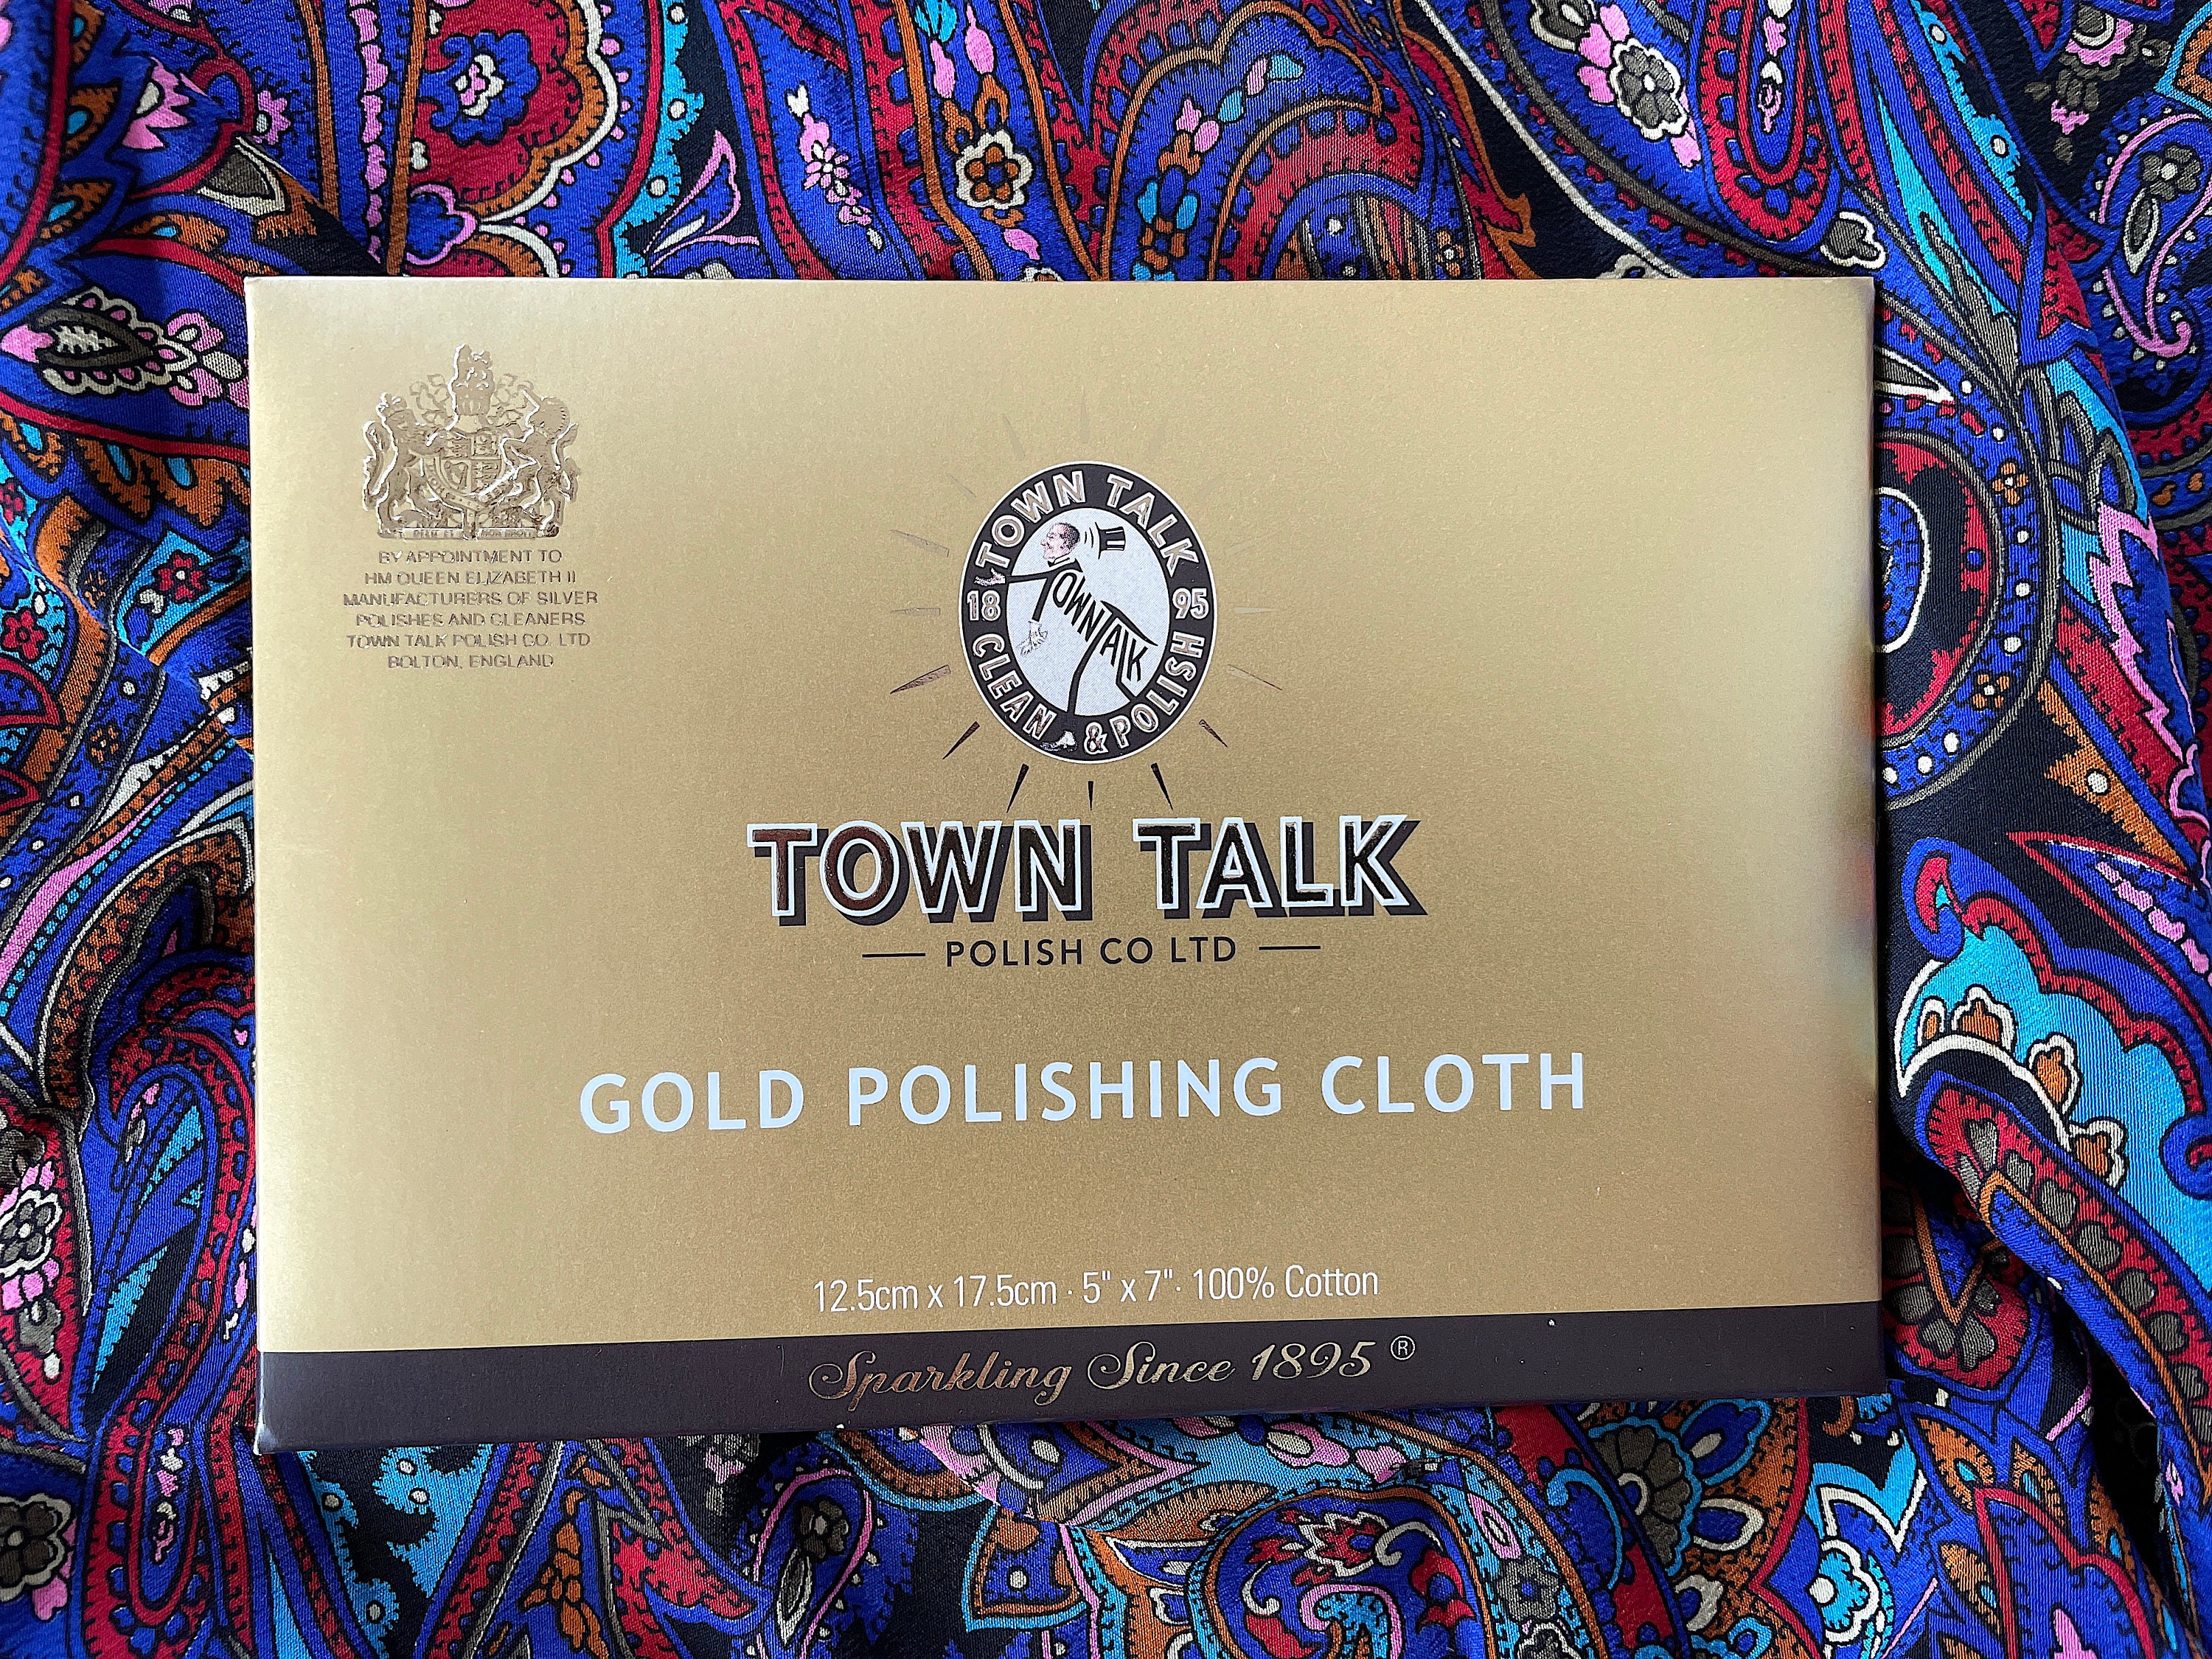 Jewelry /Gold Polishing Cloth - 5 x 7 / 12.5cm x 17.5cm Town Talk  Brilliant